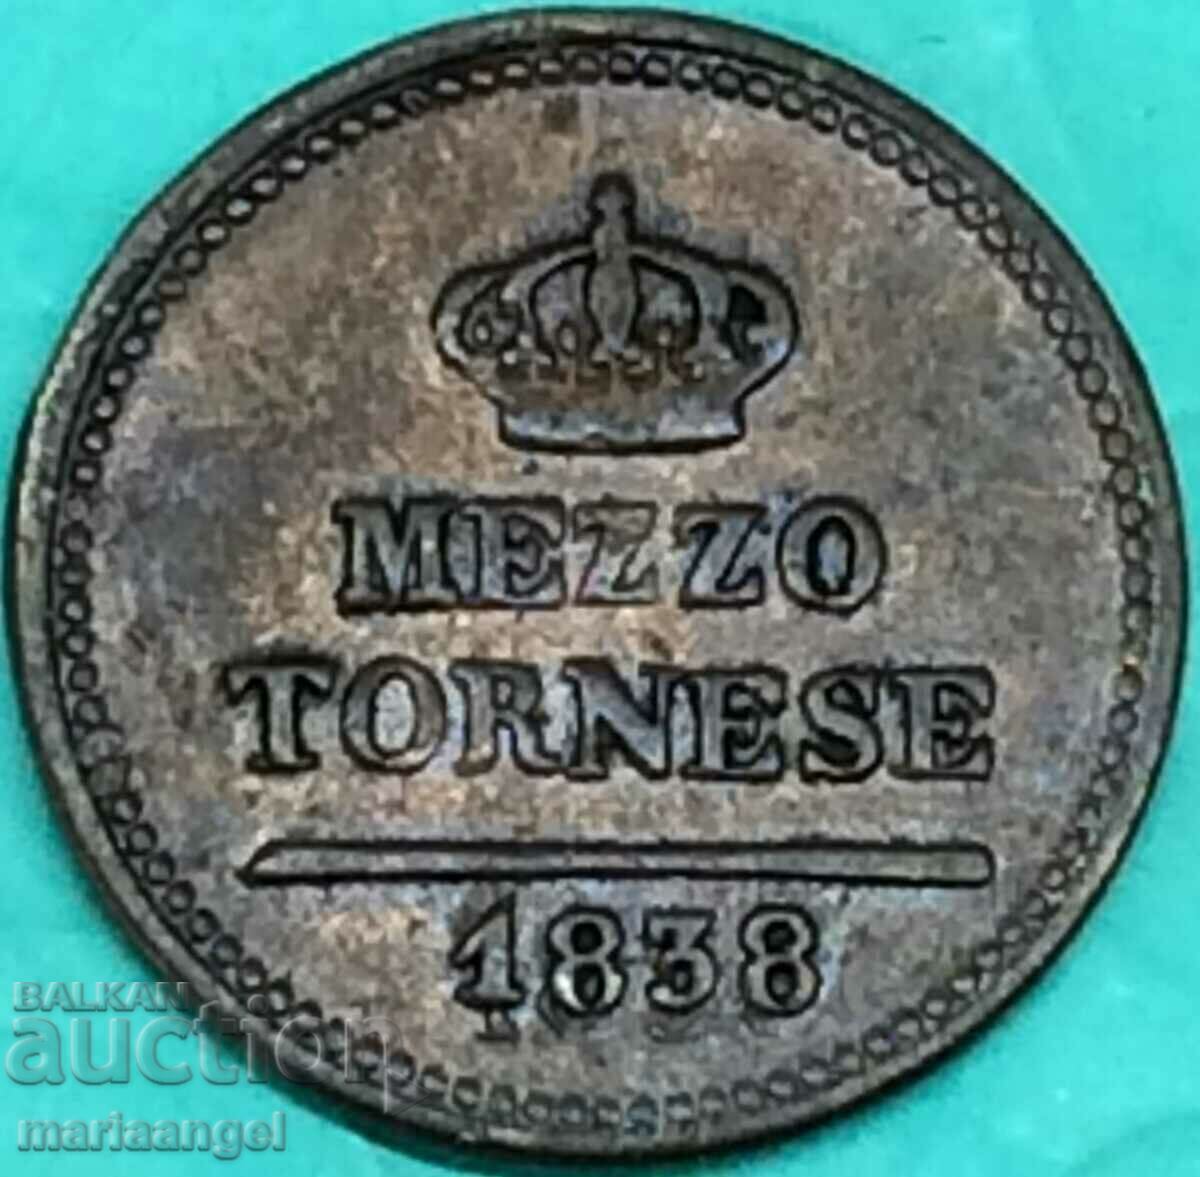 Napoli mezzo tornesi 1838 Italia Ferdinand al II-lea aramă